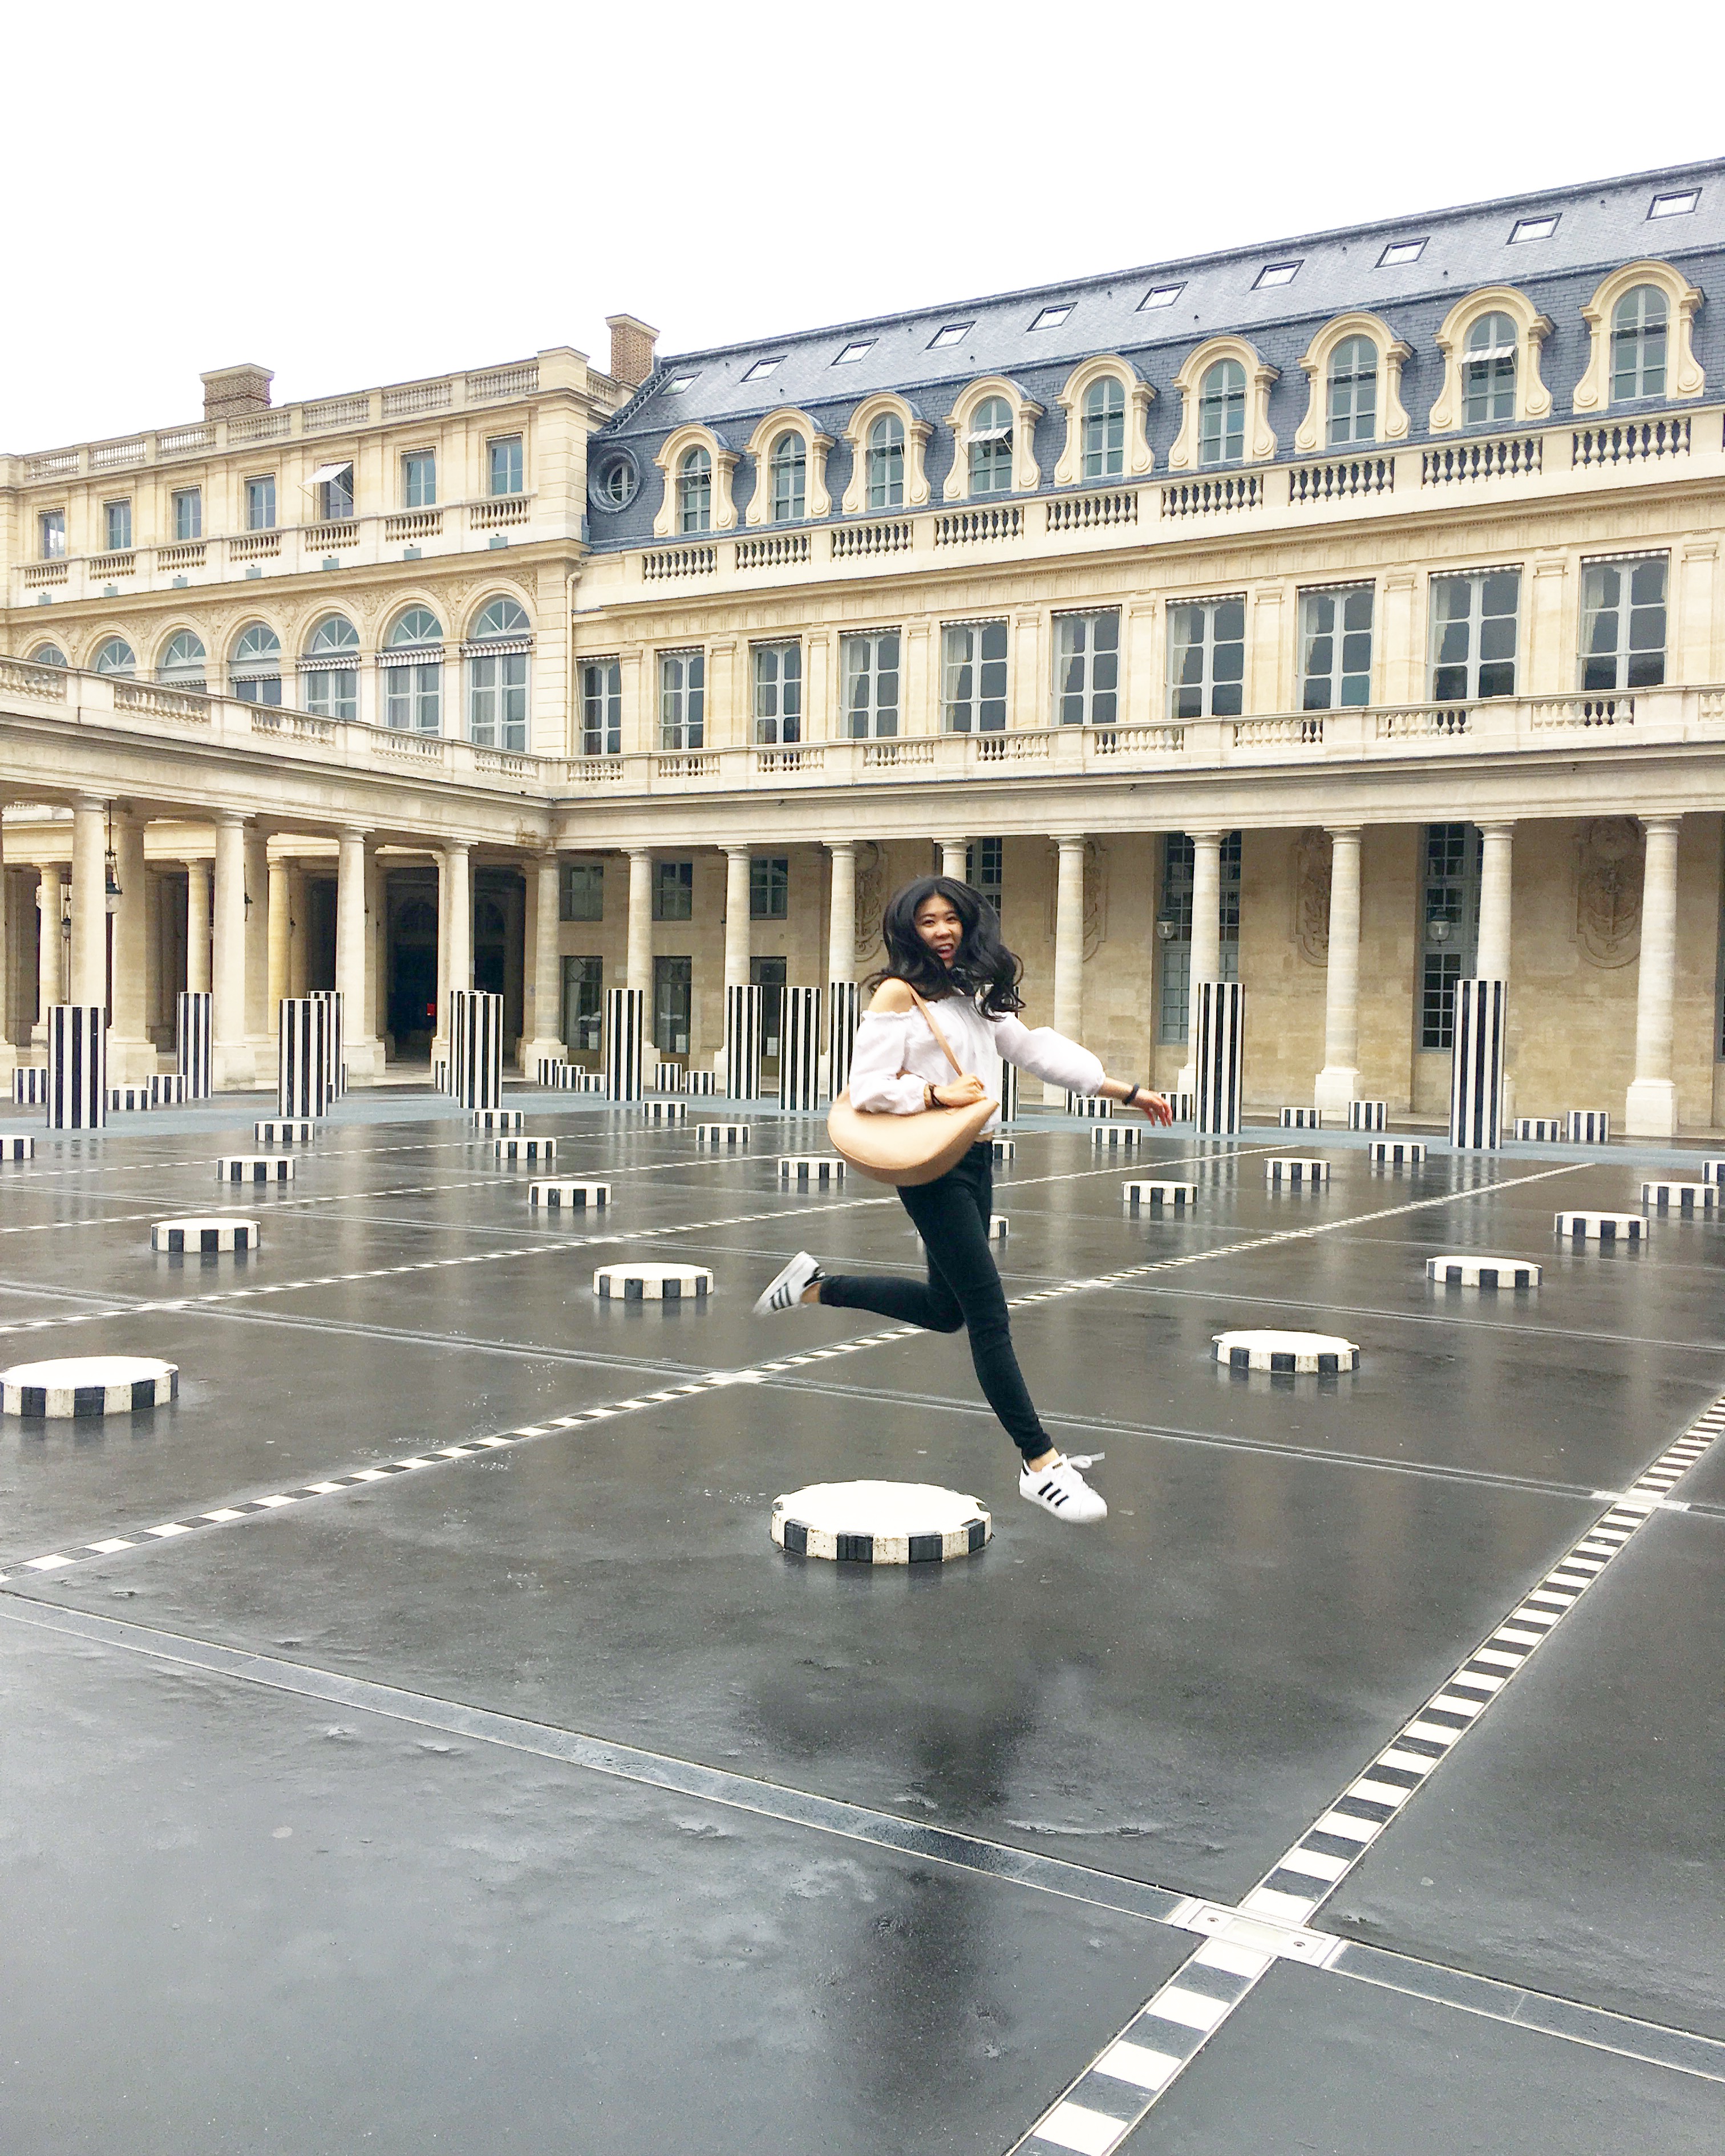 Les Palais Royal in Paris